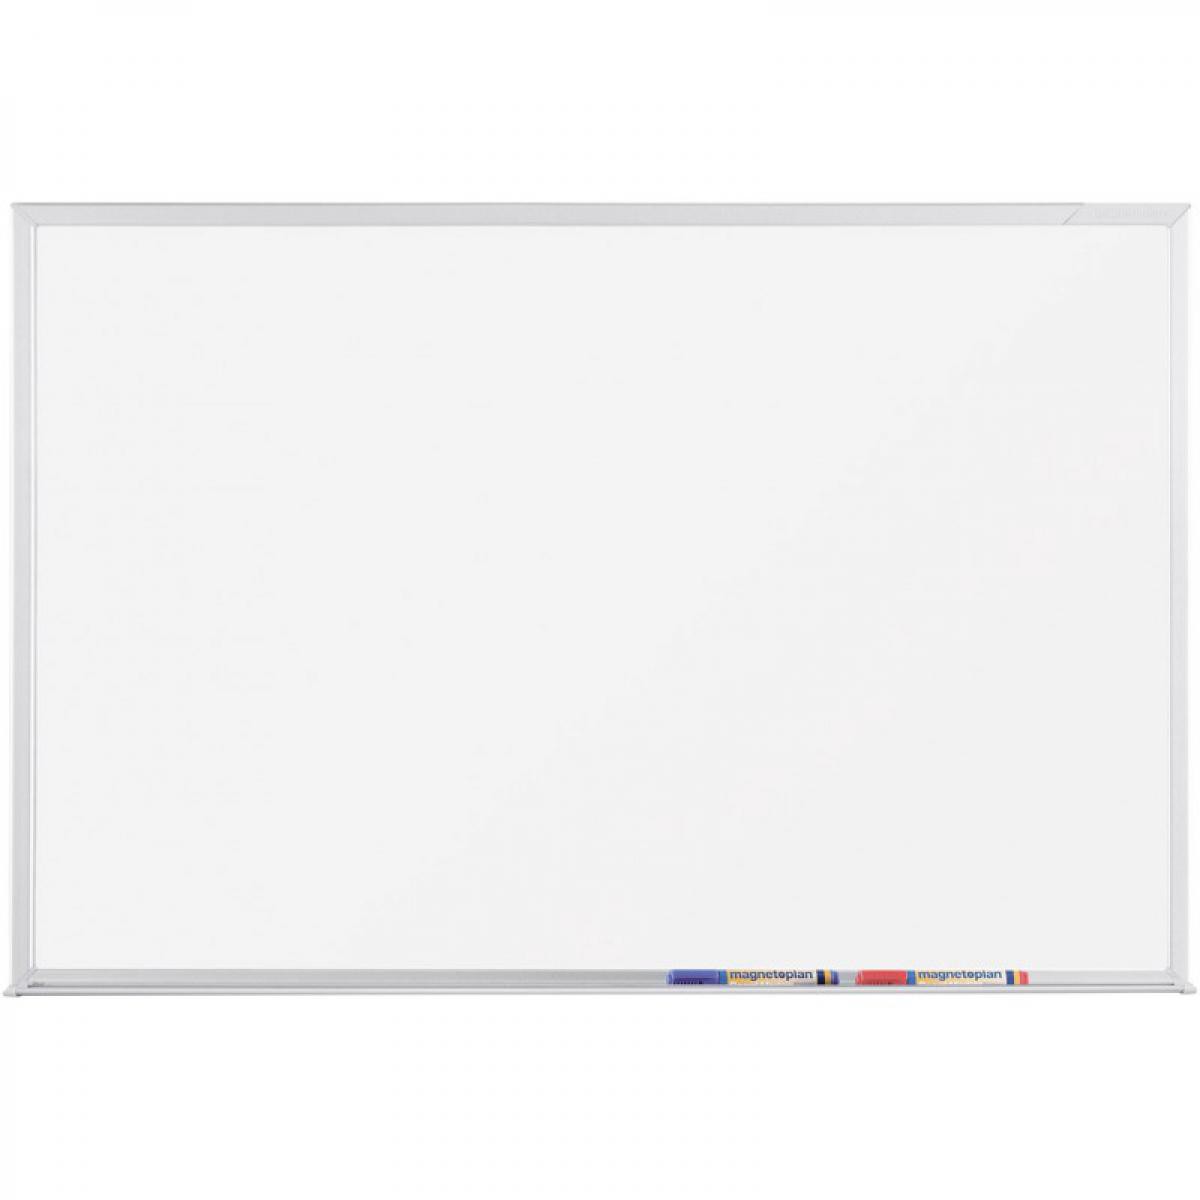 Magnetoplan - Tableau blanc à surface émaillée, 1200 x 900 mm - Magnetoplan CC - Visserie